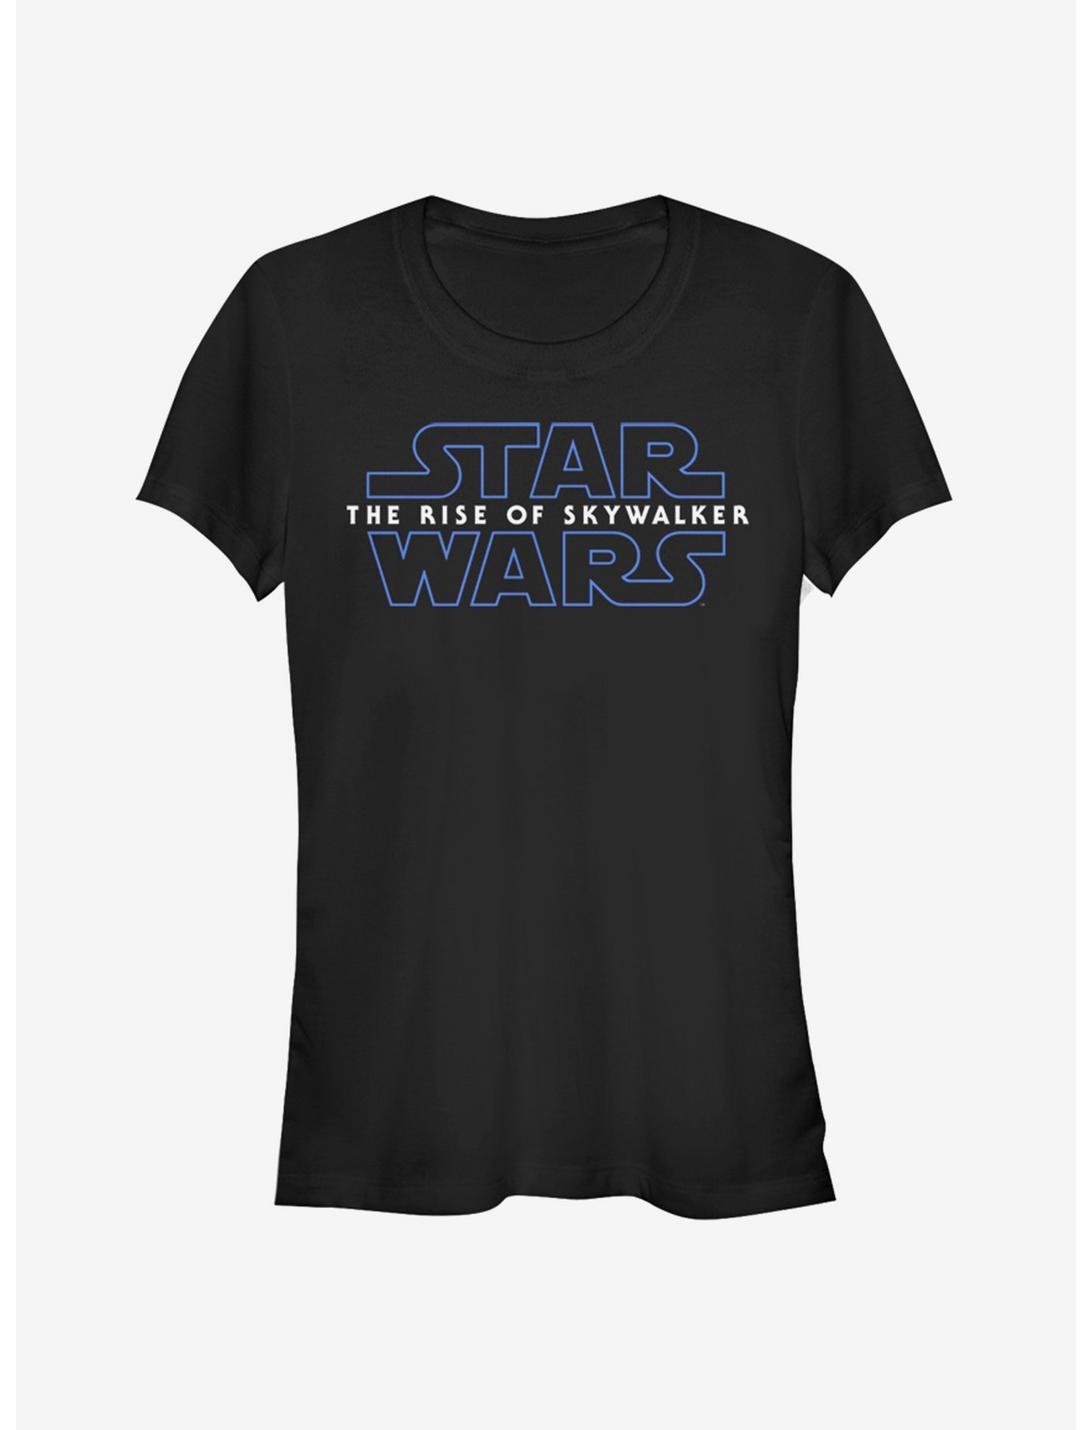 Star Wars Episode IX The Rise of Skywalker Logo Girls T-Shirt, BLACK, hi-res